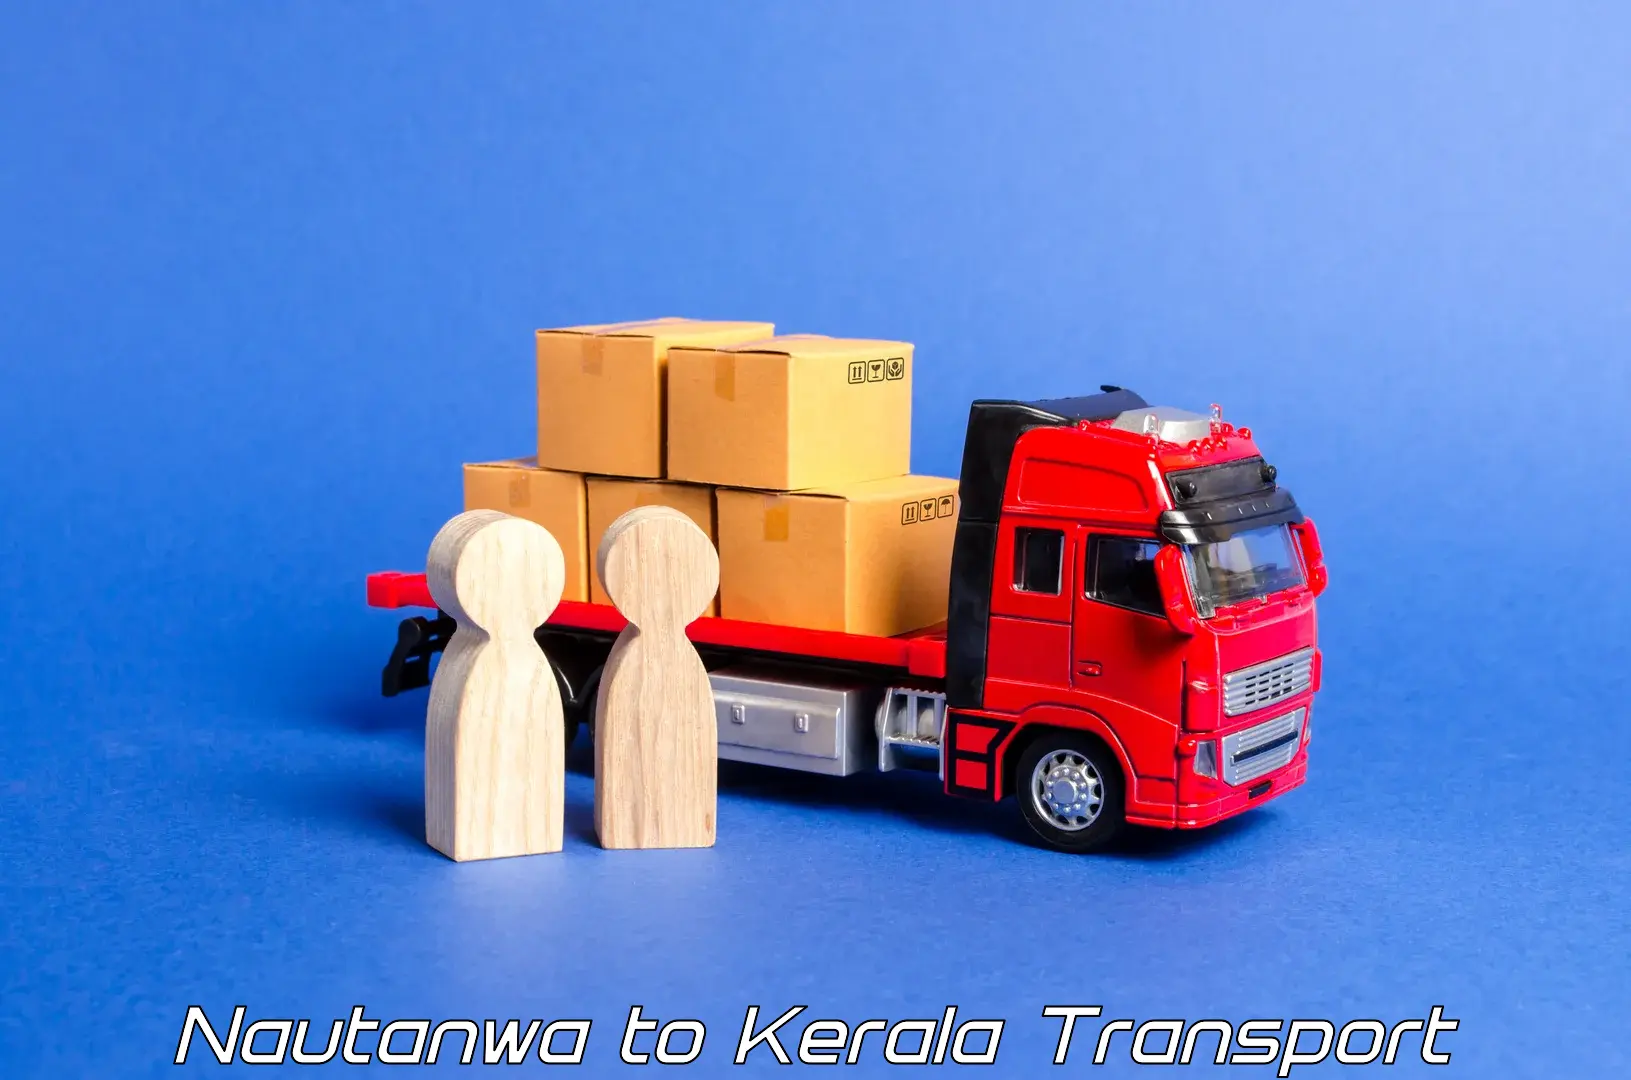 Commercial transport service Nautanwa to Cherpulassery